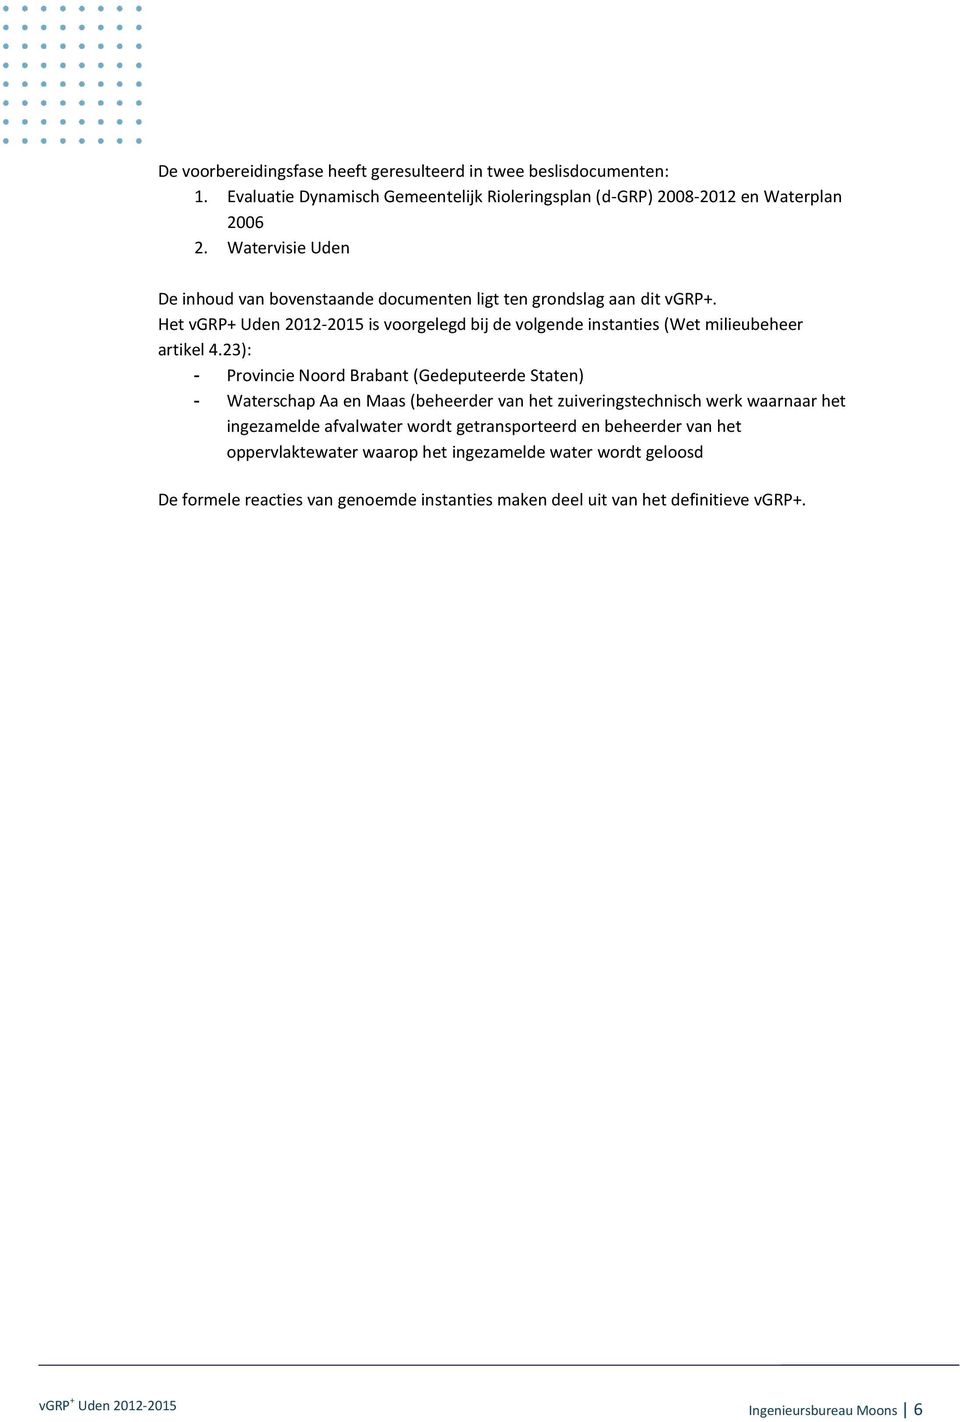 Het vgrp+ Uden 2012-2015 is voorgelegd bij de volgende instanties (Wet milieubeheer artikel 4.